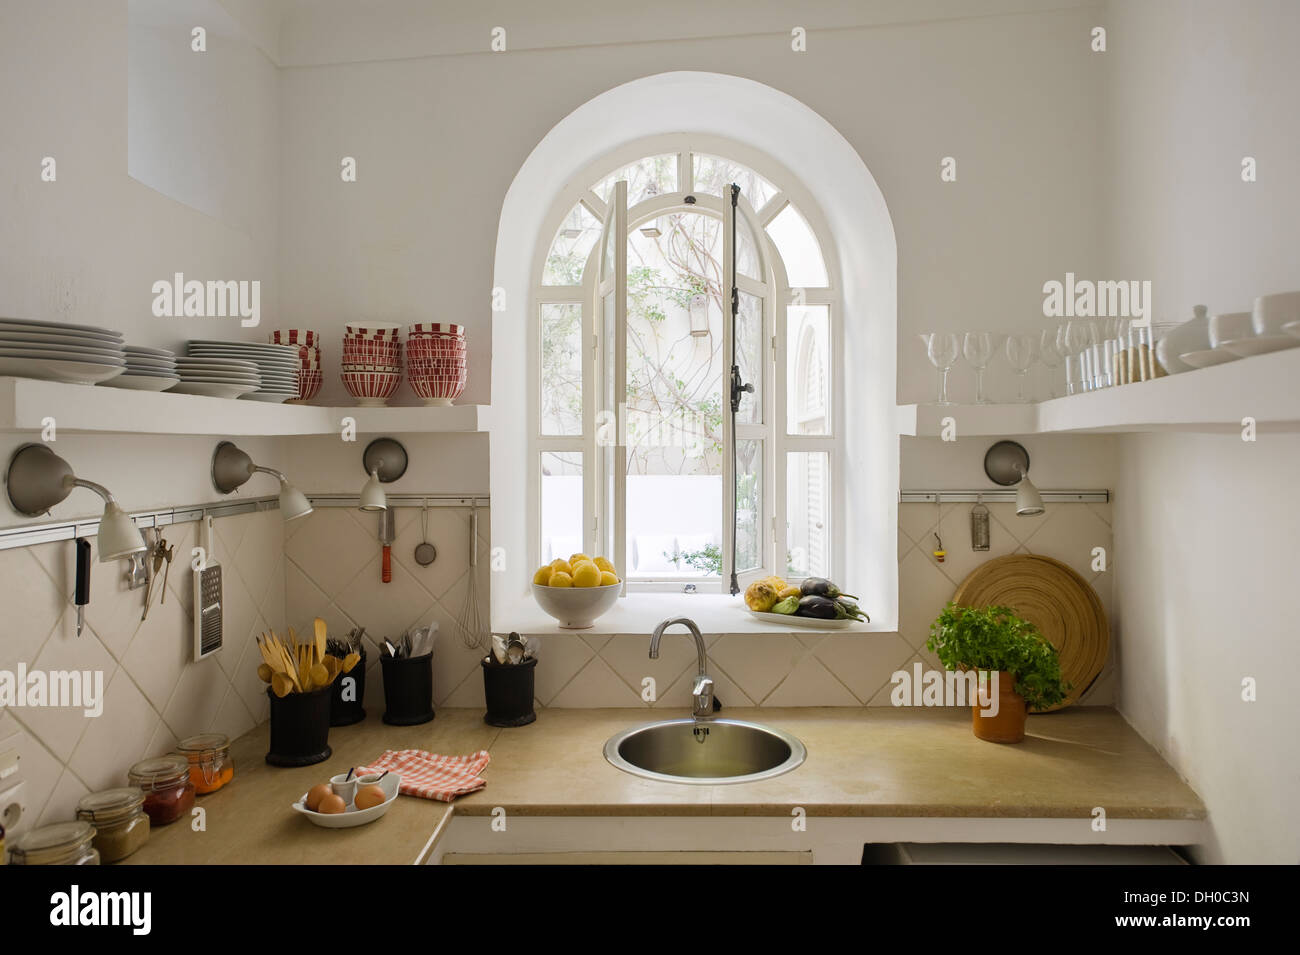 Moderna cucina marocchina con finestra ad arco e vista sul cortile interno Foto Stock